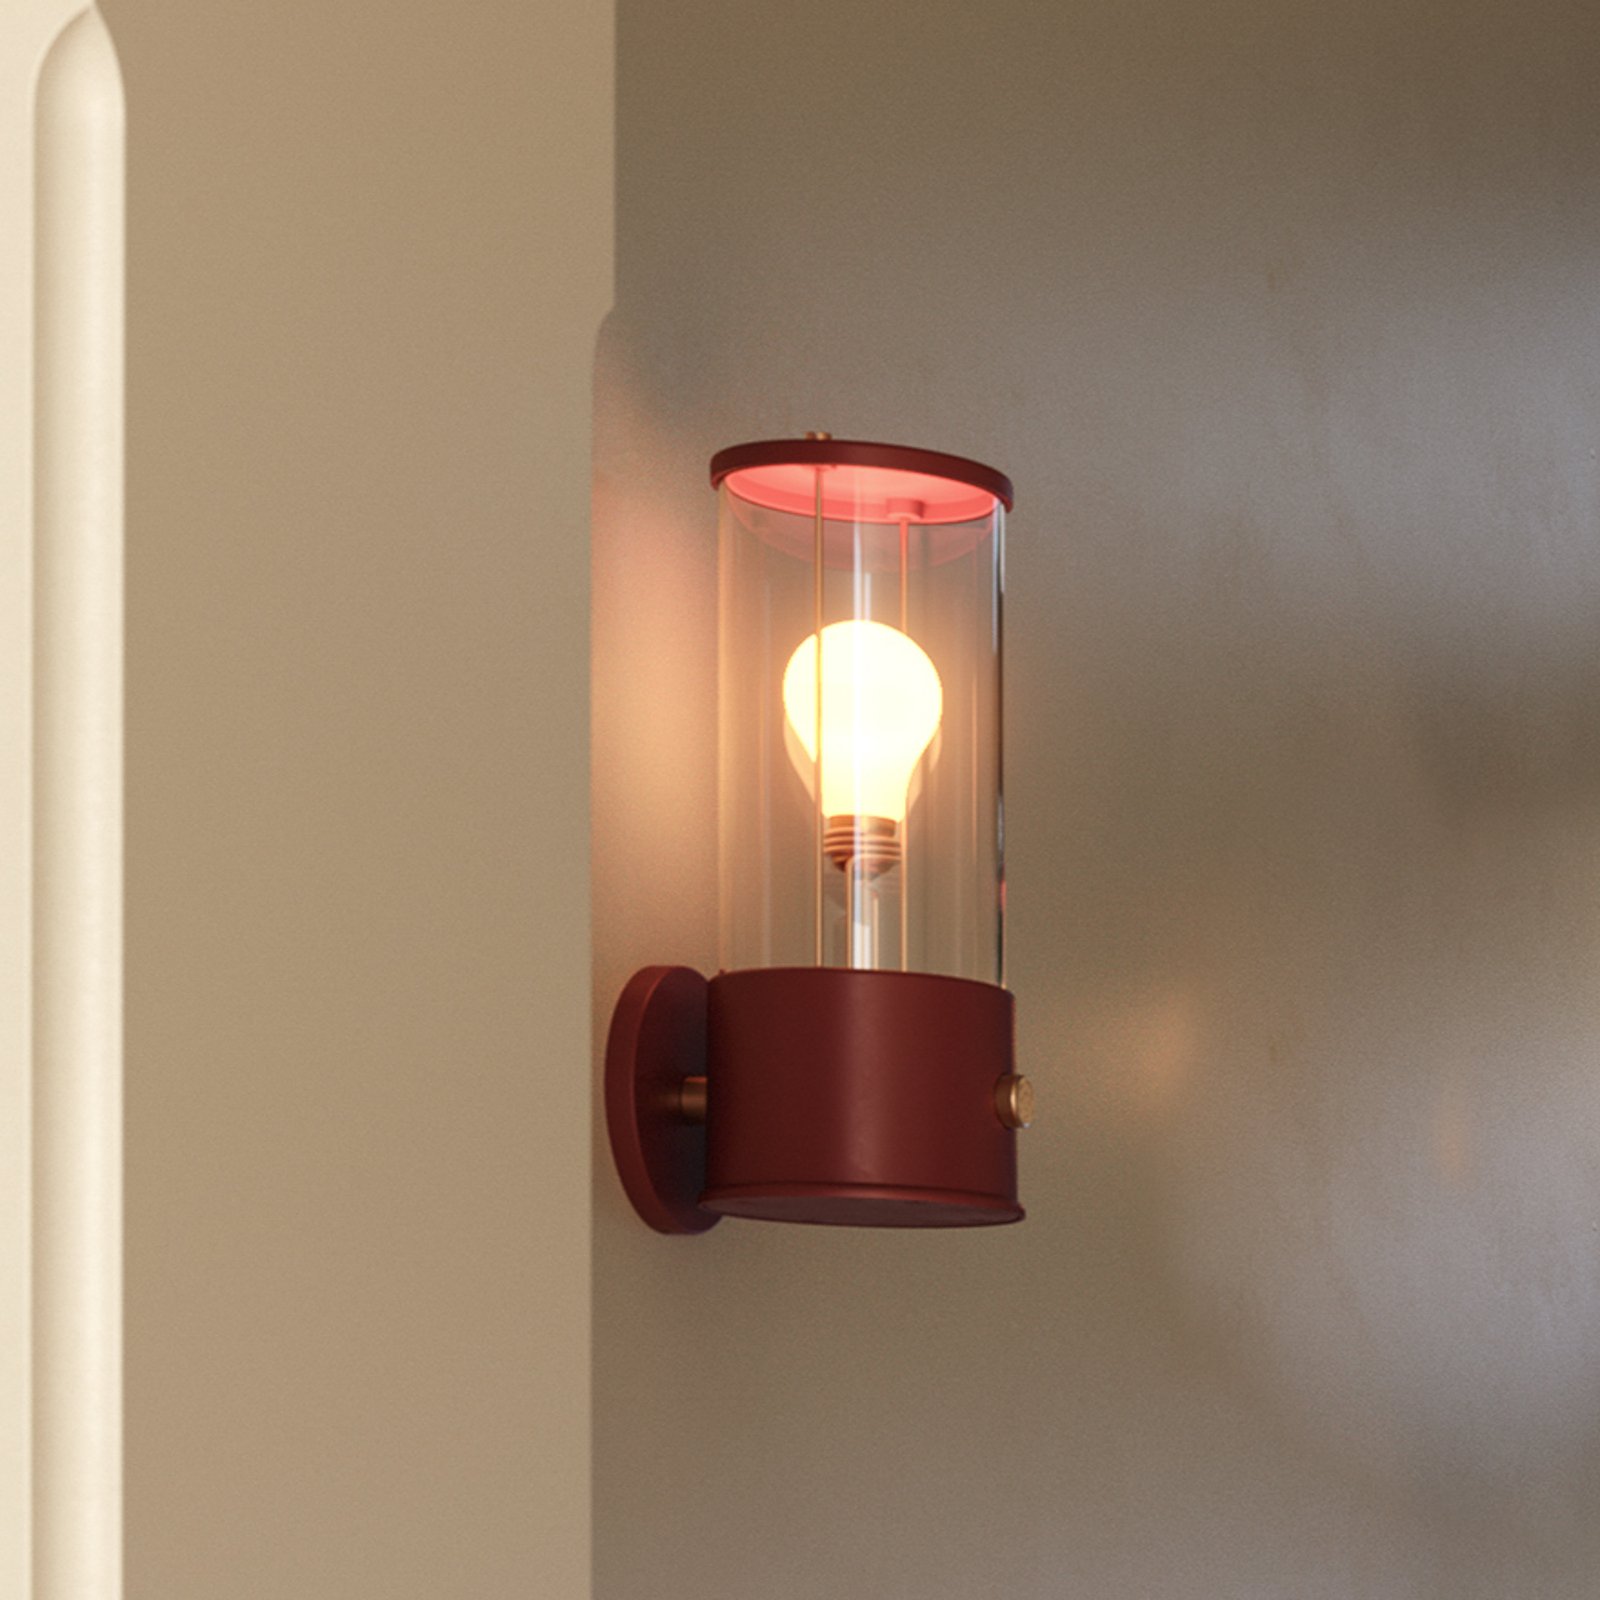 Tala vägglampa Muse Portable, LED-lampa E27, röd